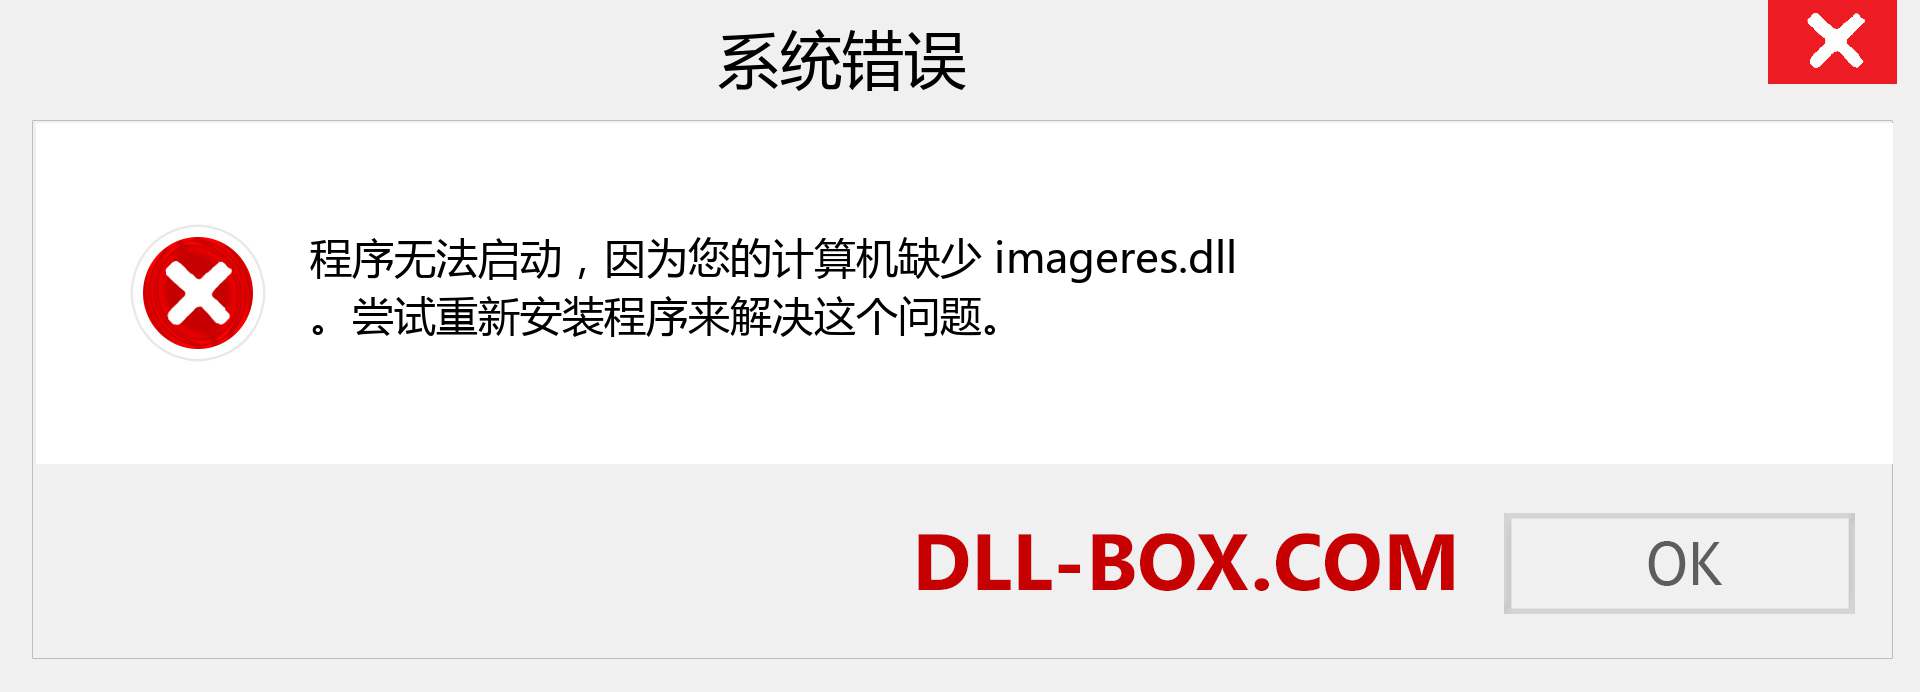 imageres.dll 文件丢失？。 适用于 Windows 7、8、10 的下载 - 修复 Windows、照片、图像上的 imageres dll 丢失错误